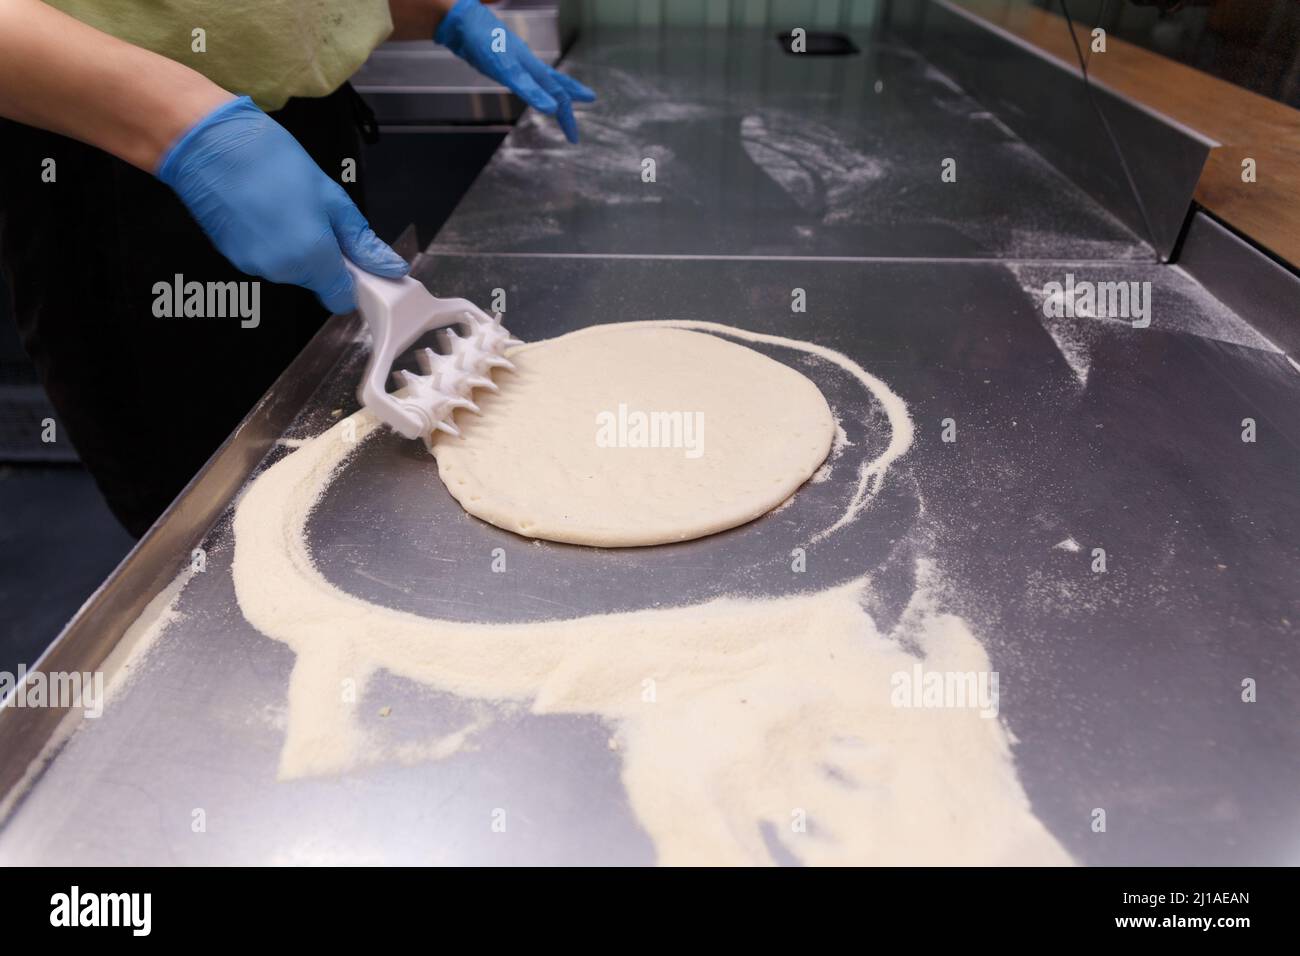 Il cuoco lavora la pasta per pizza con uno speciale rullo con punte per rendere la pasta soffice e croccante. Foto Stock